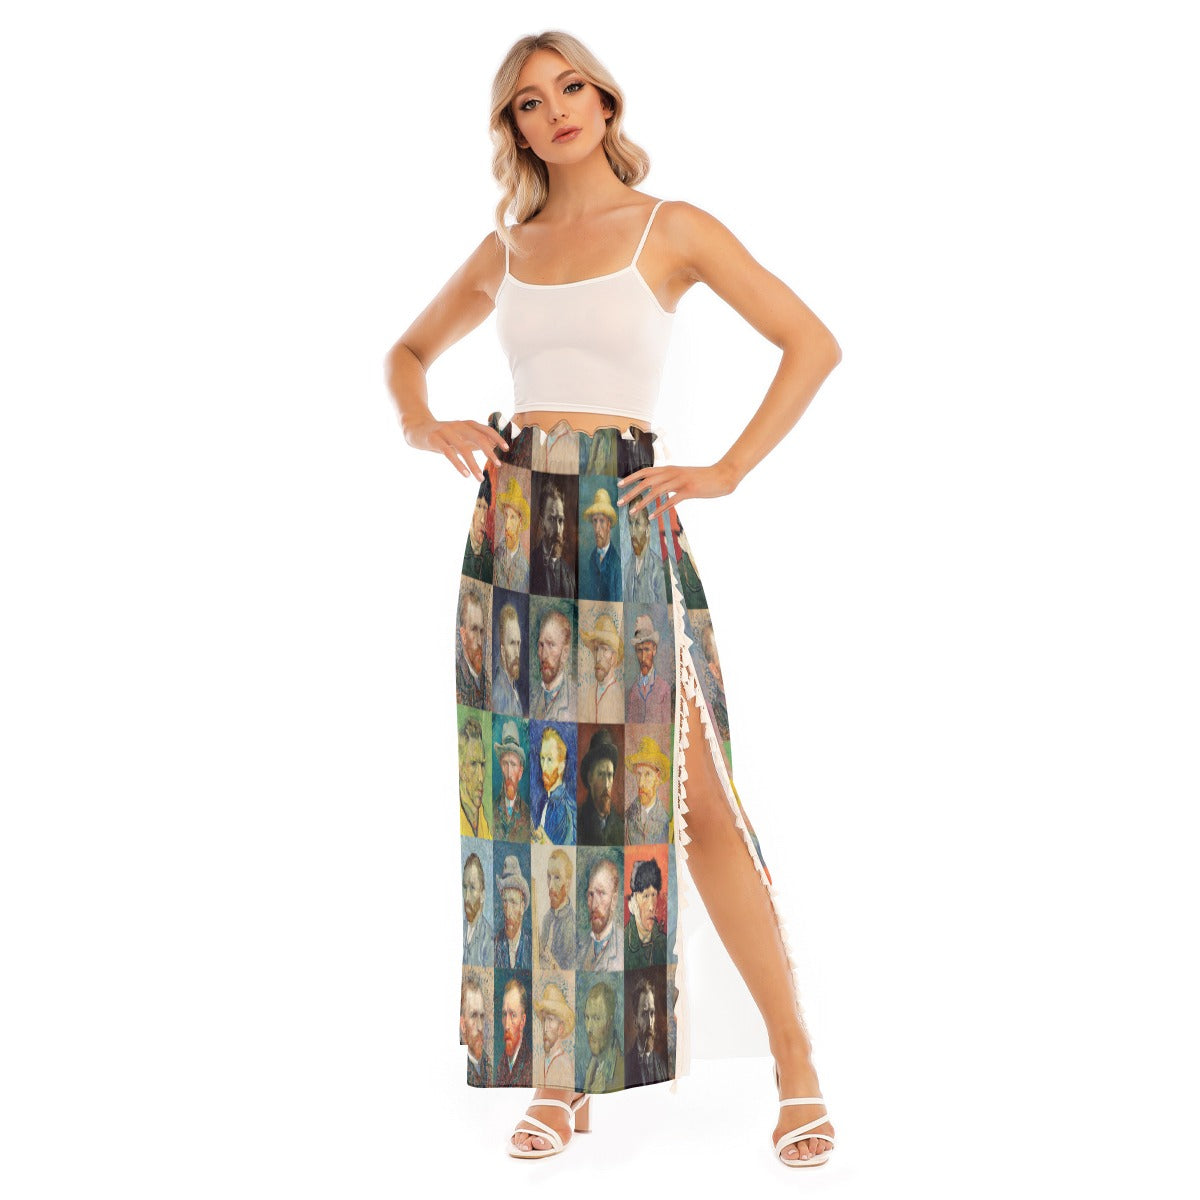 High-Quality Fabric Women's Art Skirt